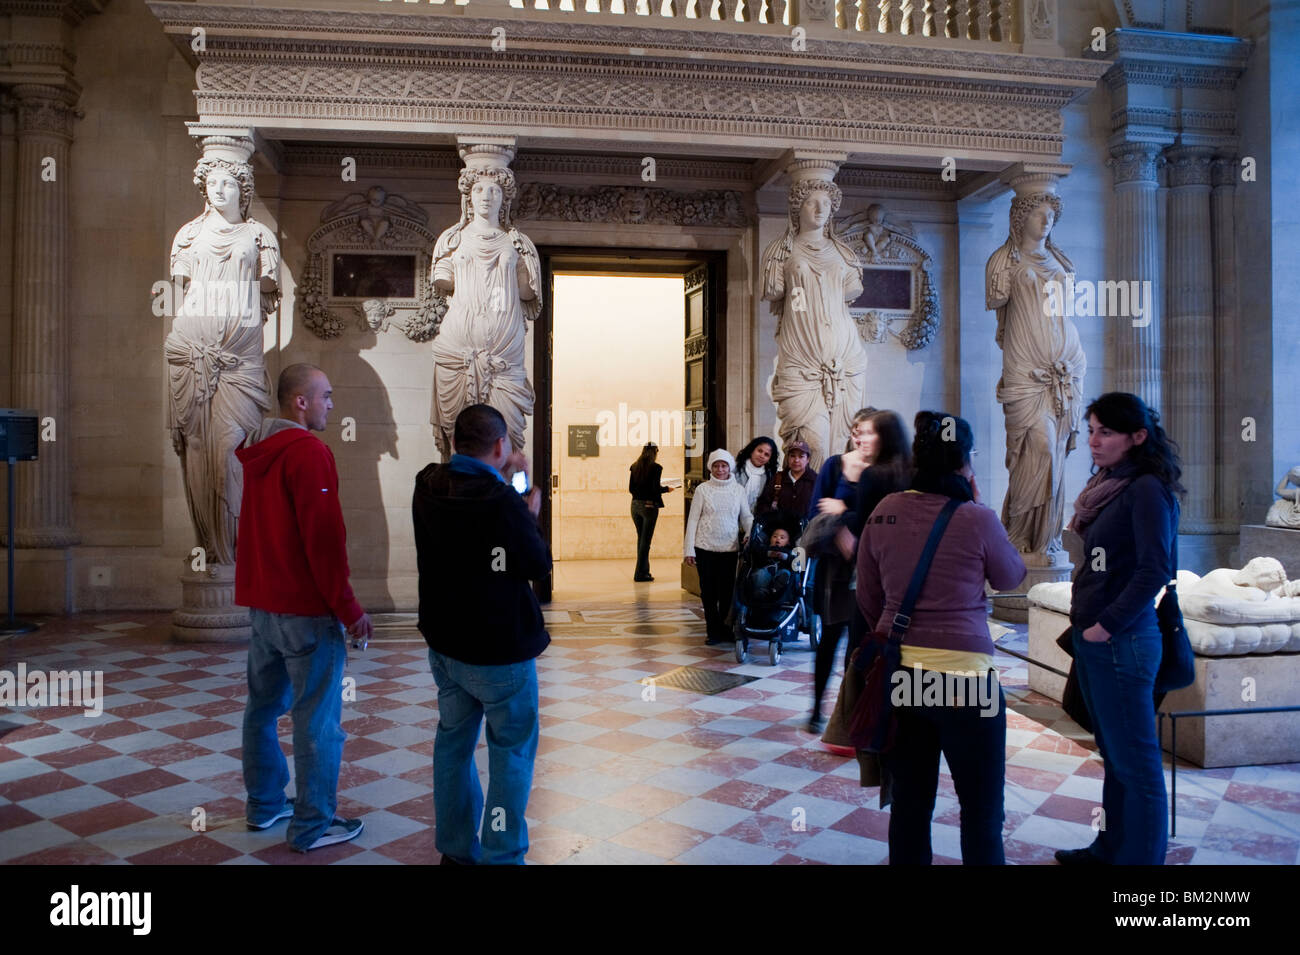 Medium Groupe de personnes visitant l'intérieur Galerie d'art, Hall, sculptures grecques, Musée du Louvre, Paris, France, collection de statues Banque D'Images